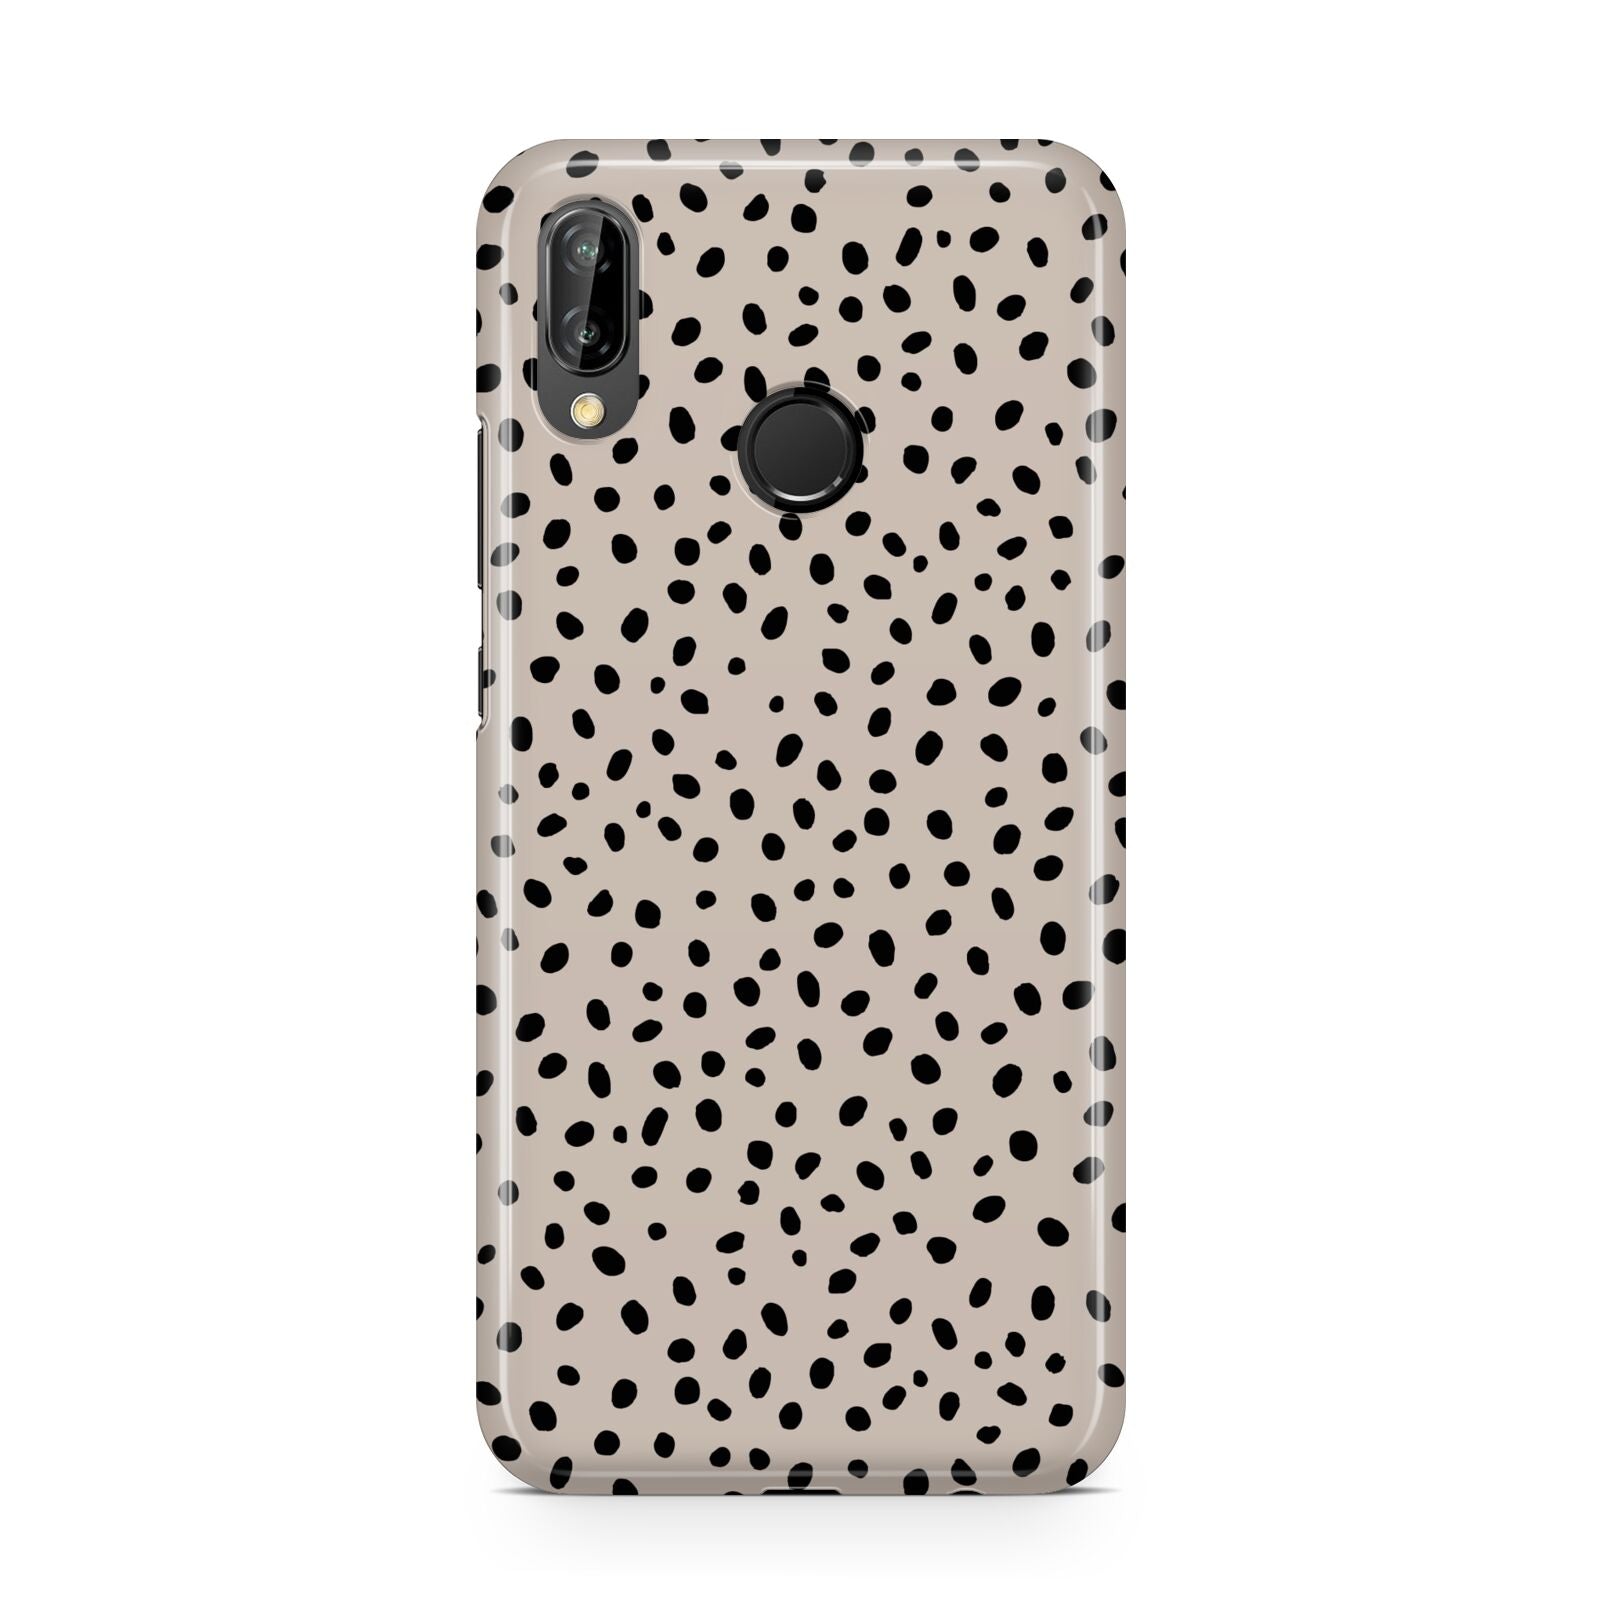 Almond Polka Dot Huawei P20 Lite Phone Case